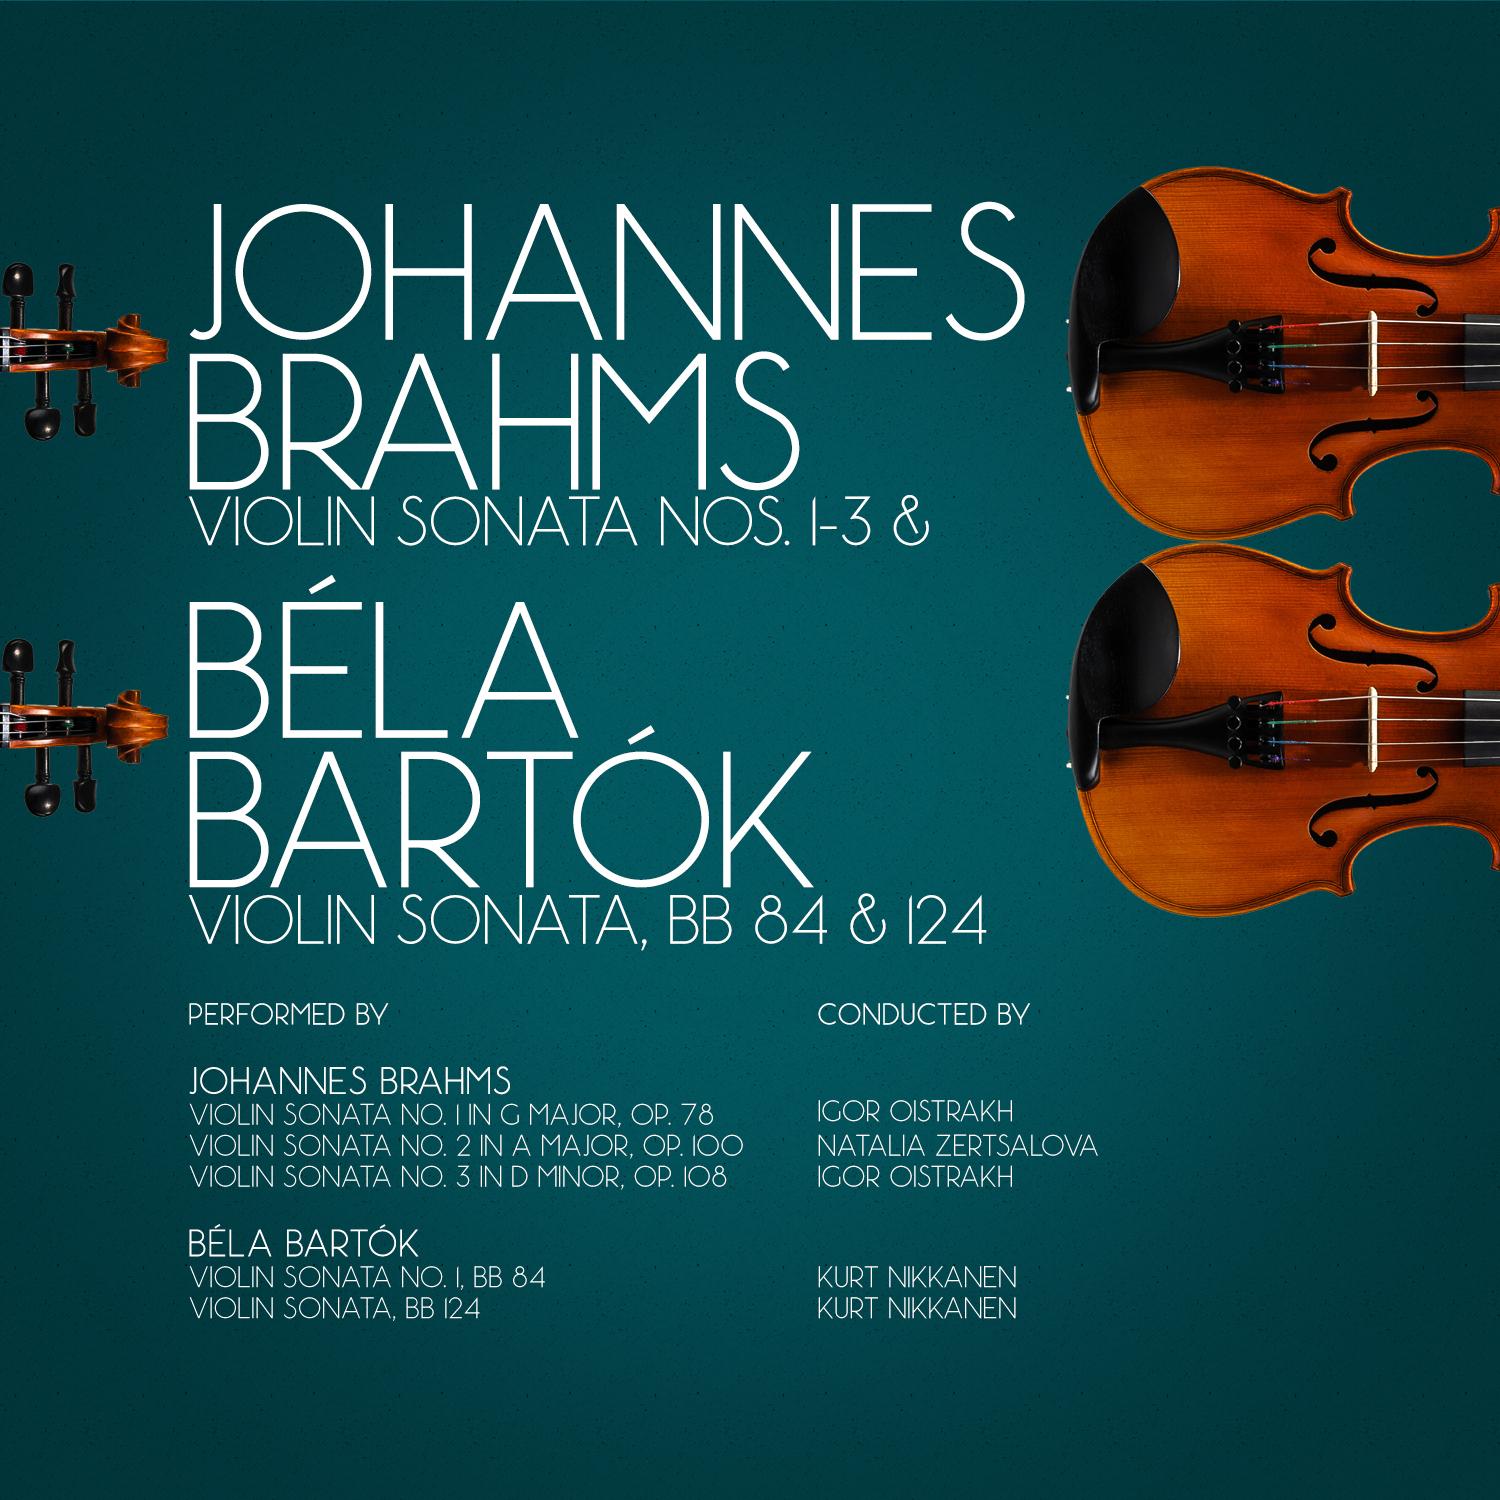 Johannes Brahms: Violin Sonata Nos. 1-3 & Béla Bartók Violin Sonata, Bb 84 & 124